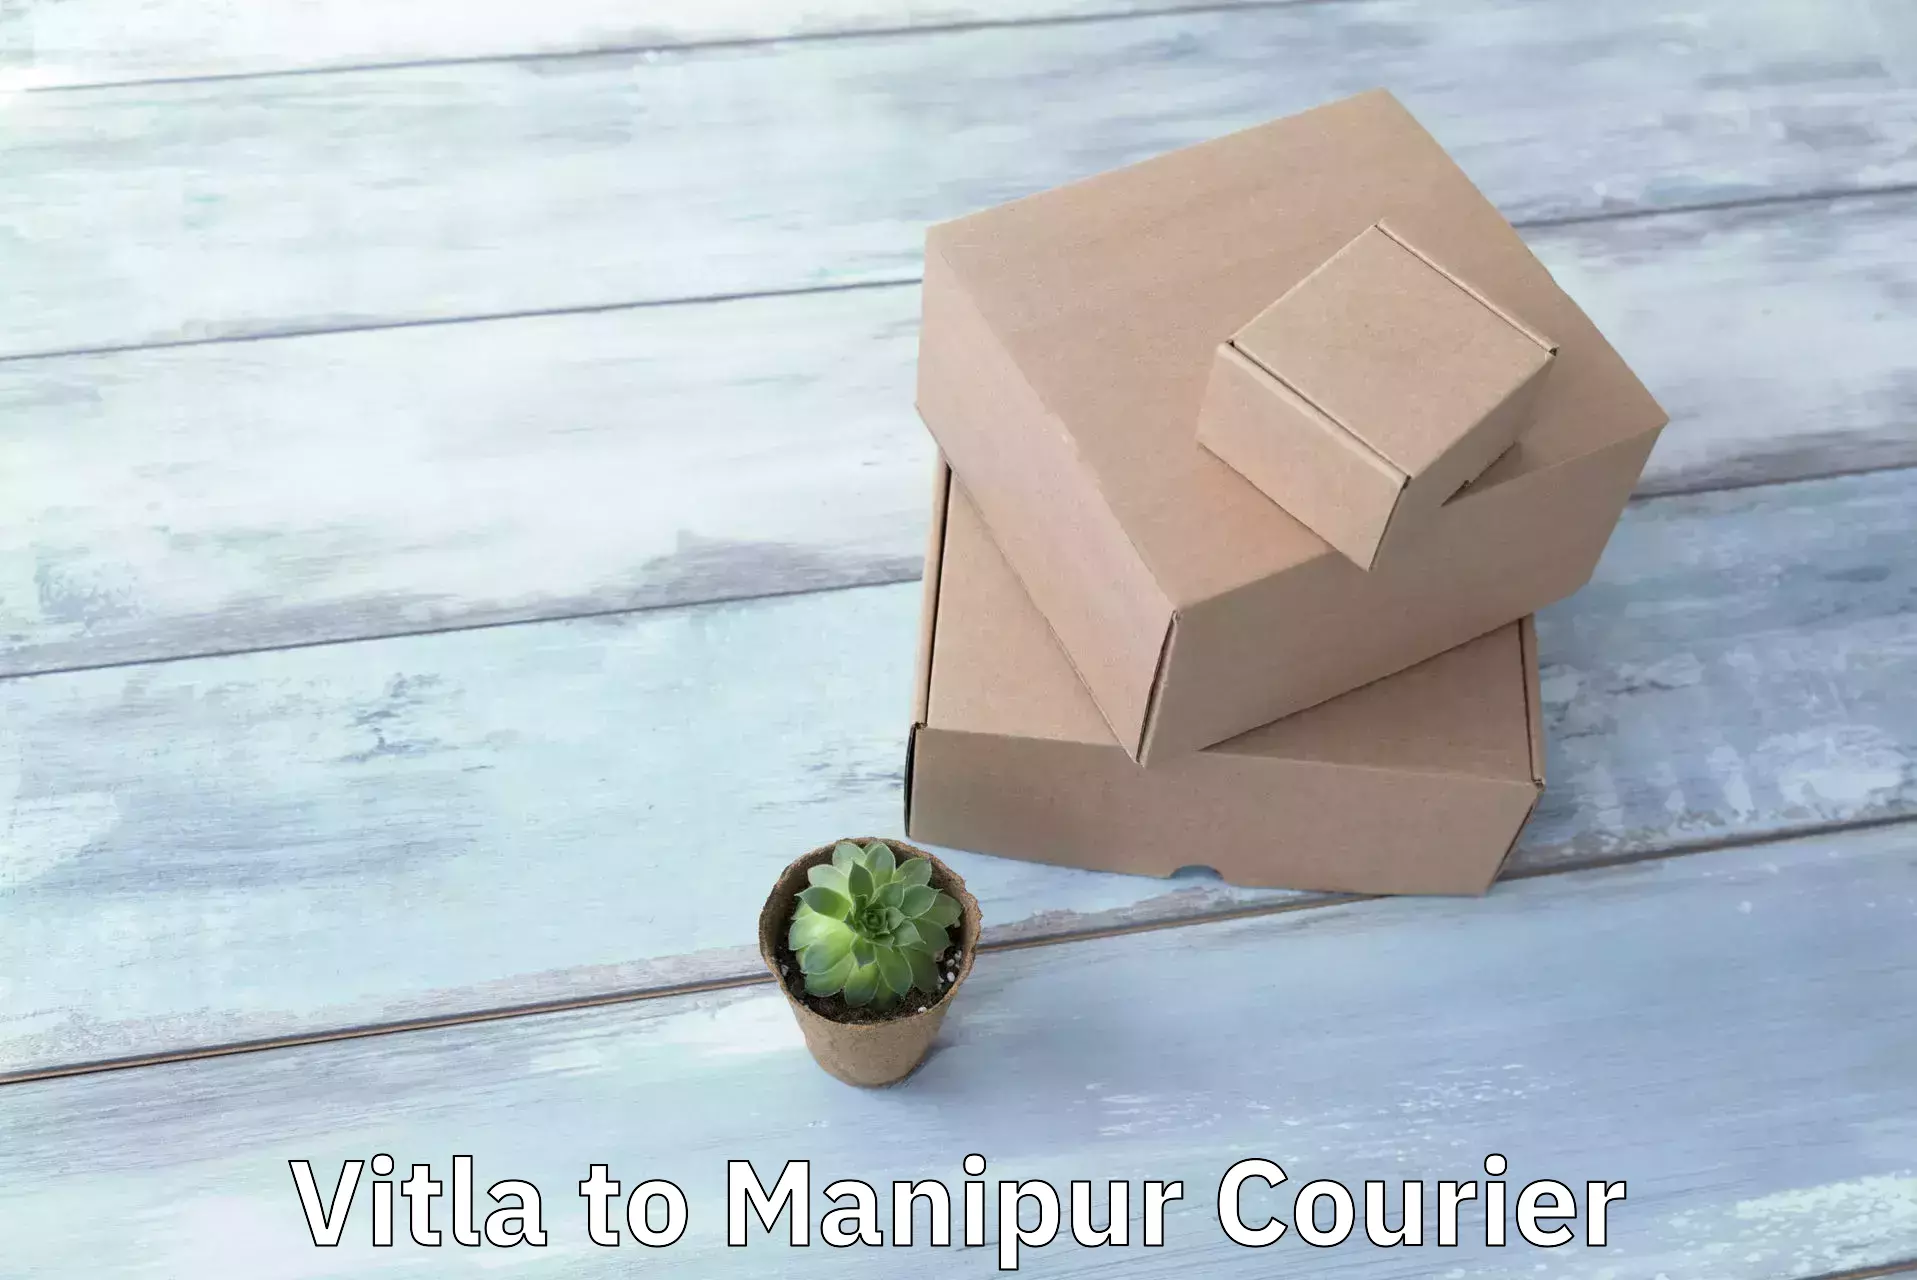 Remote area delivery Vitla to Manipur